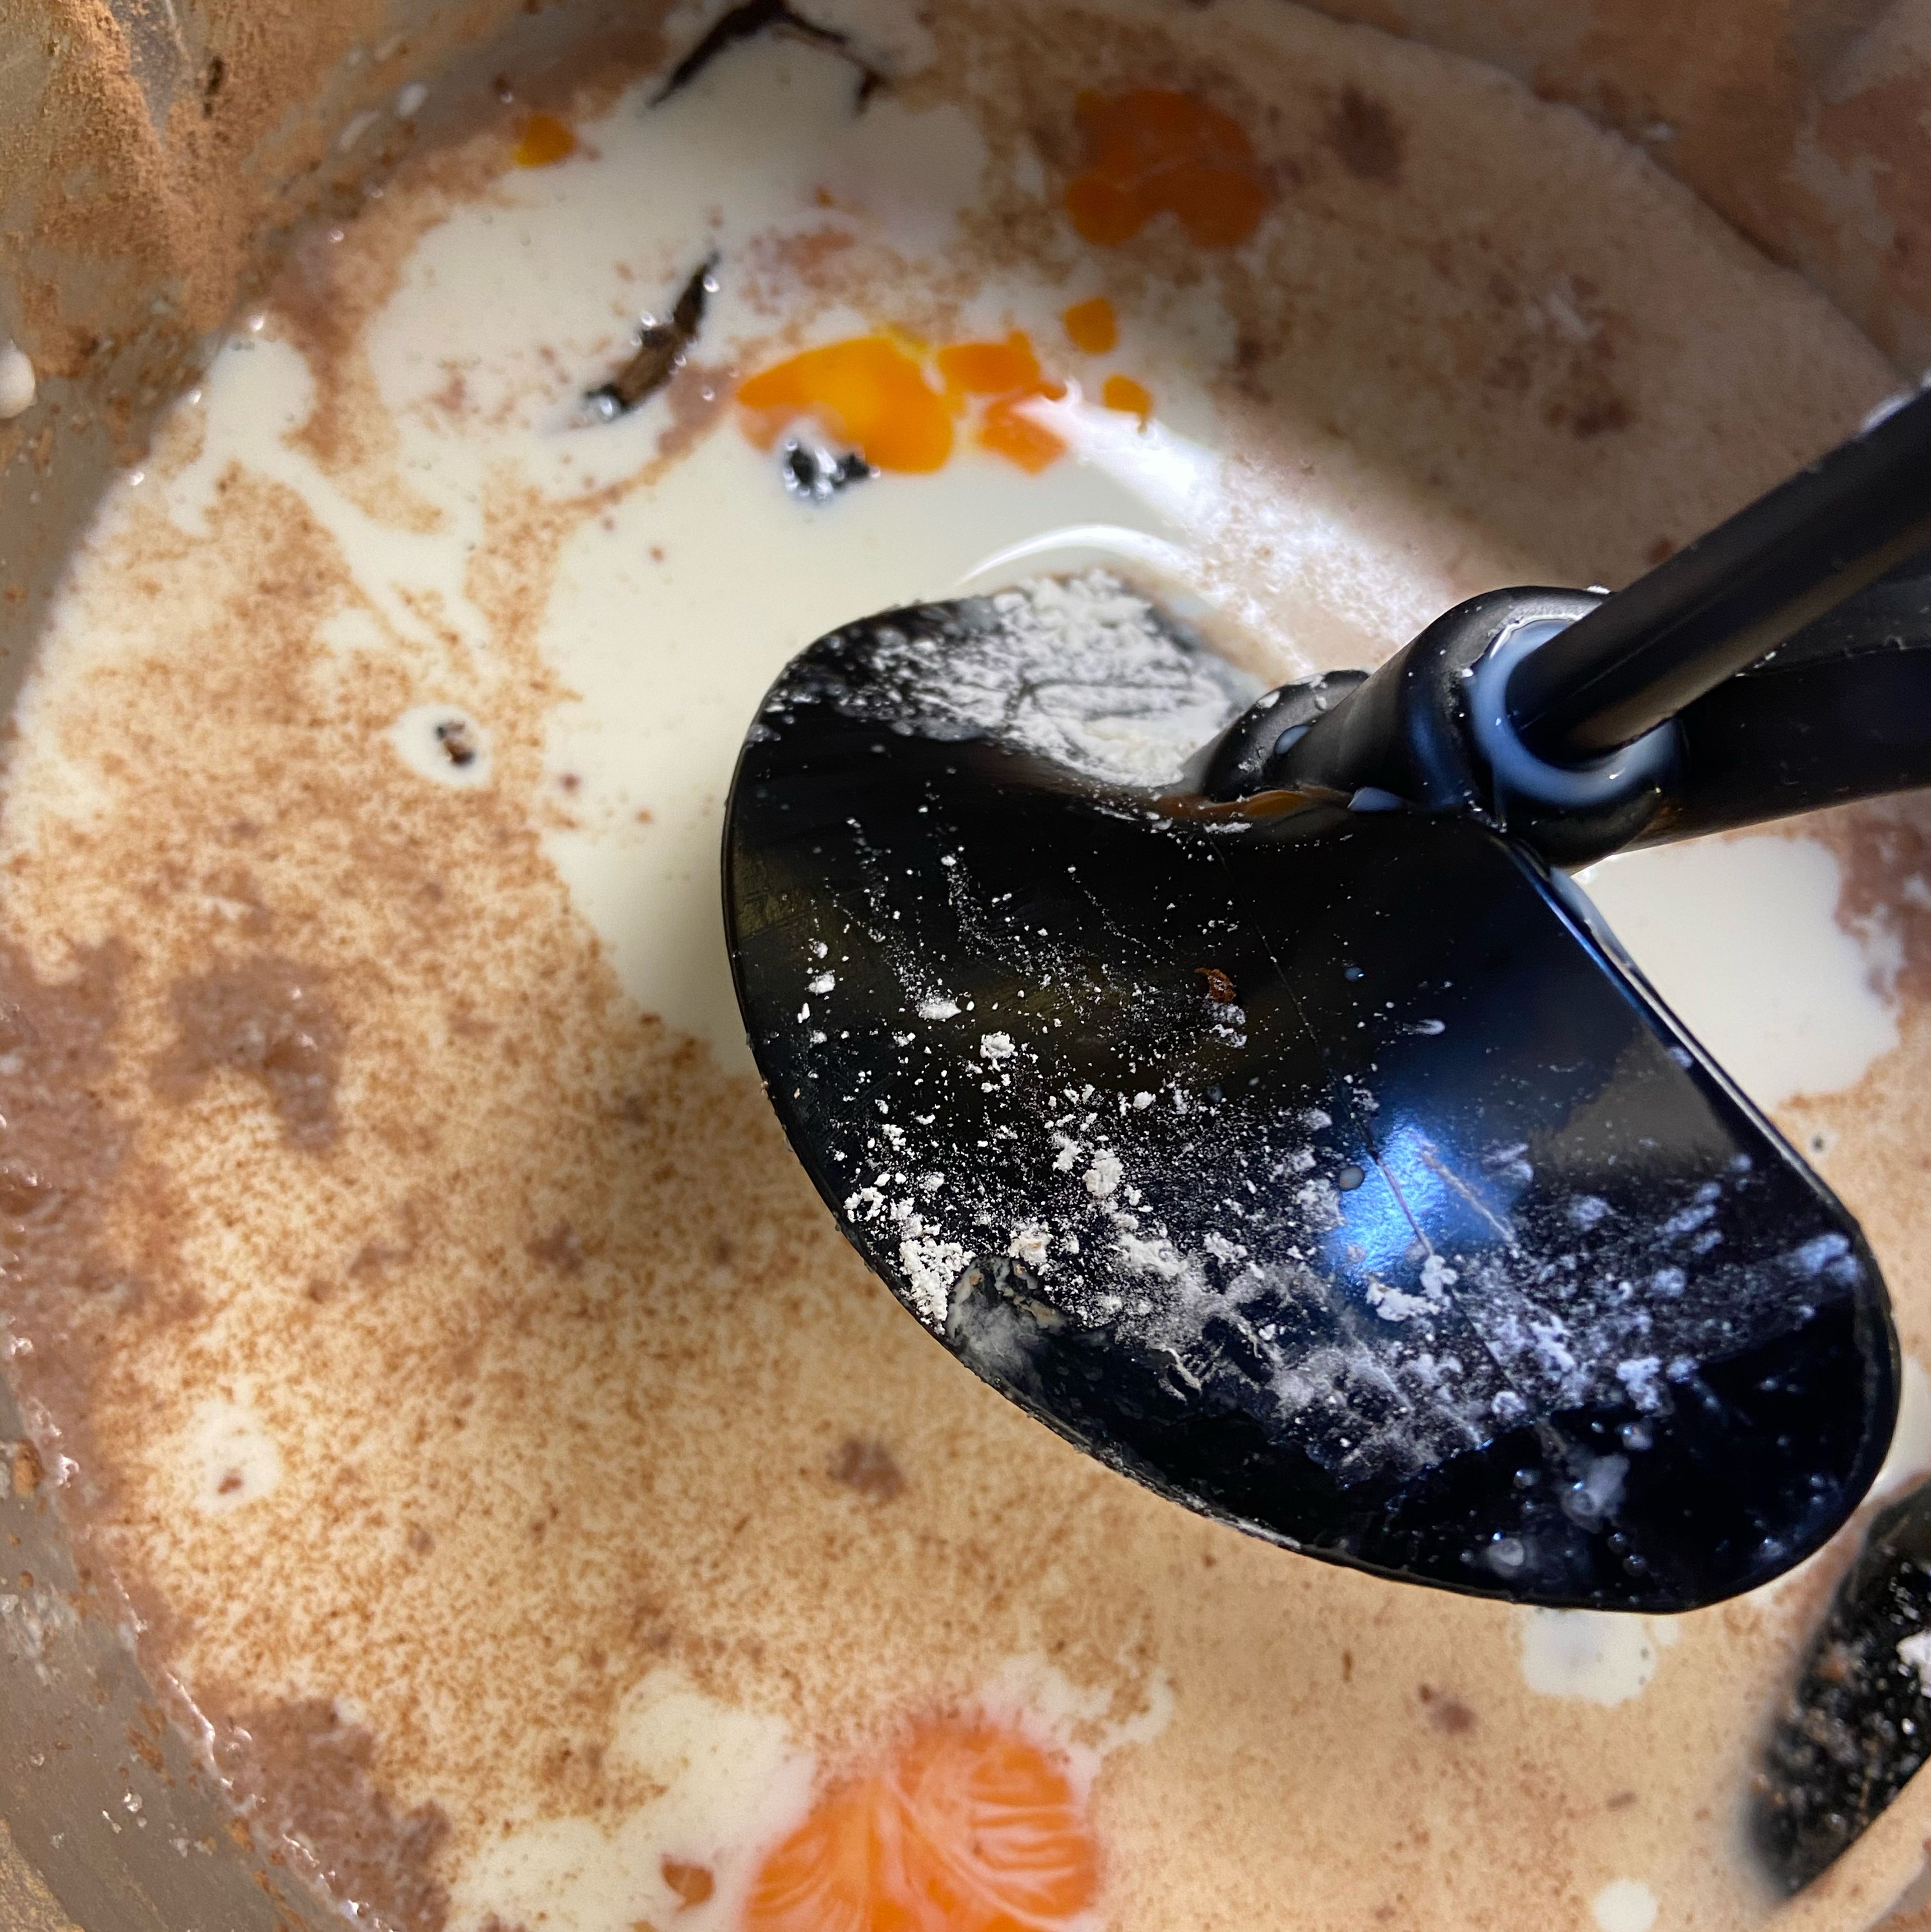 Das Universalmesser entfernen und den 3D-Rührer einsetzten. Die Milch, das Eigelb, den Zucker und das Salz in den Cookit geben. Die Vanilleschote halbieren und das Mark auskratzen. Dieses, und die ausgekratzte Vanilleschote in den Cookit geben. Mit dem 3D-Rührer, für 8 Minuten auf Stufe 5 bei 90 Grad kochen (3D-Rührer | Stufe 5 | 90°C | 8 Min.).